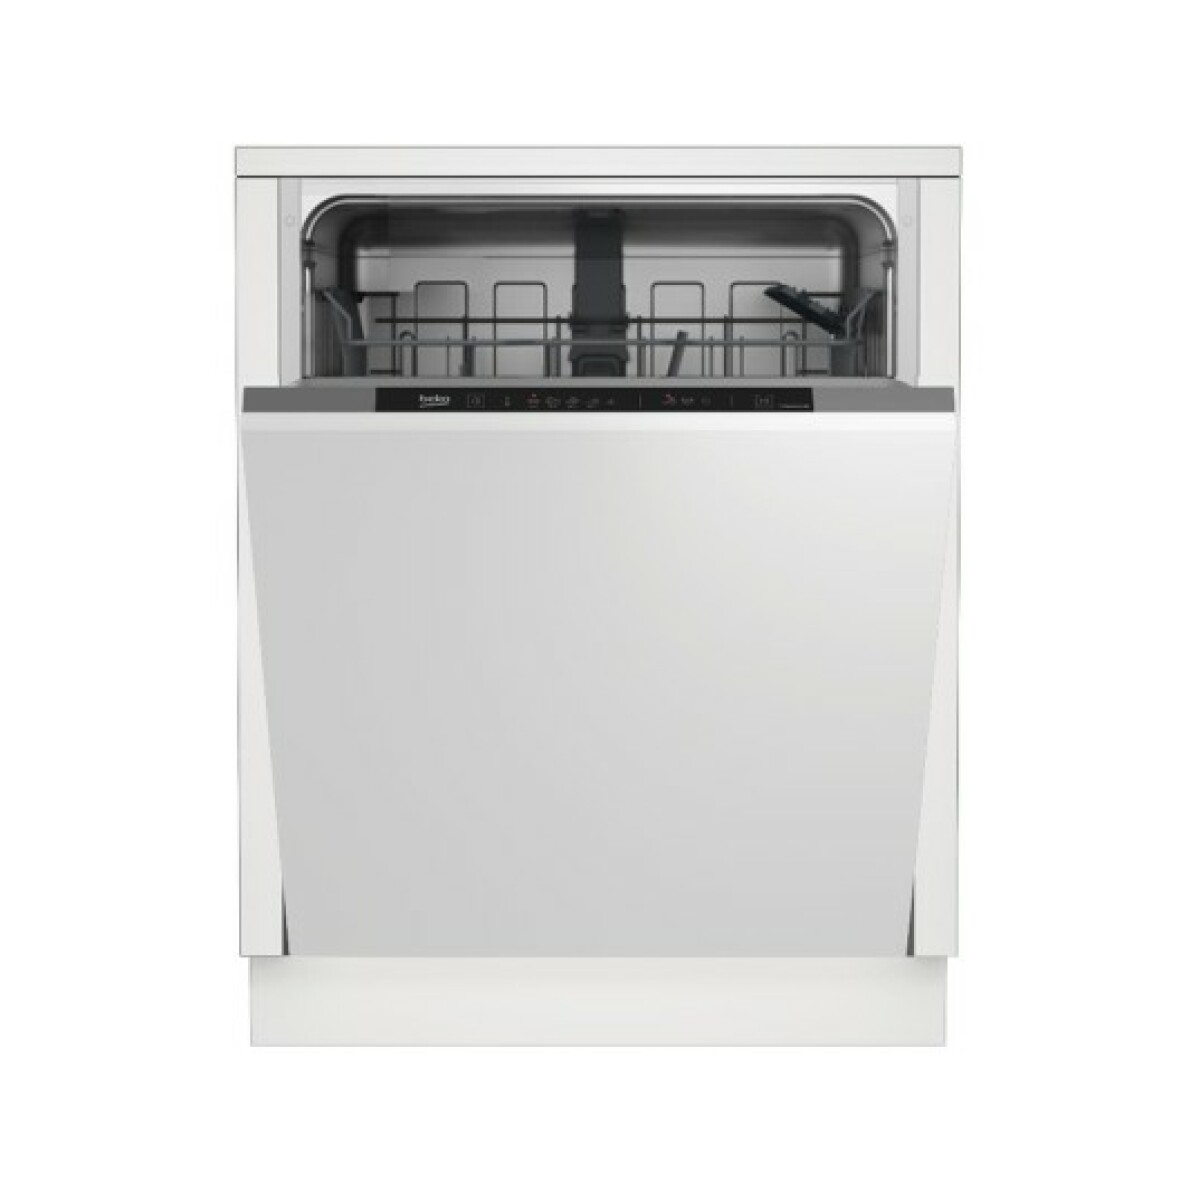 Lave-vaisselle Beko Lave vaisselle tout integrable 60 cm PDIN25311, 13 couverts, 5 programmes, 47 db